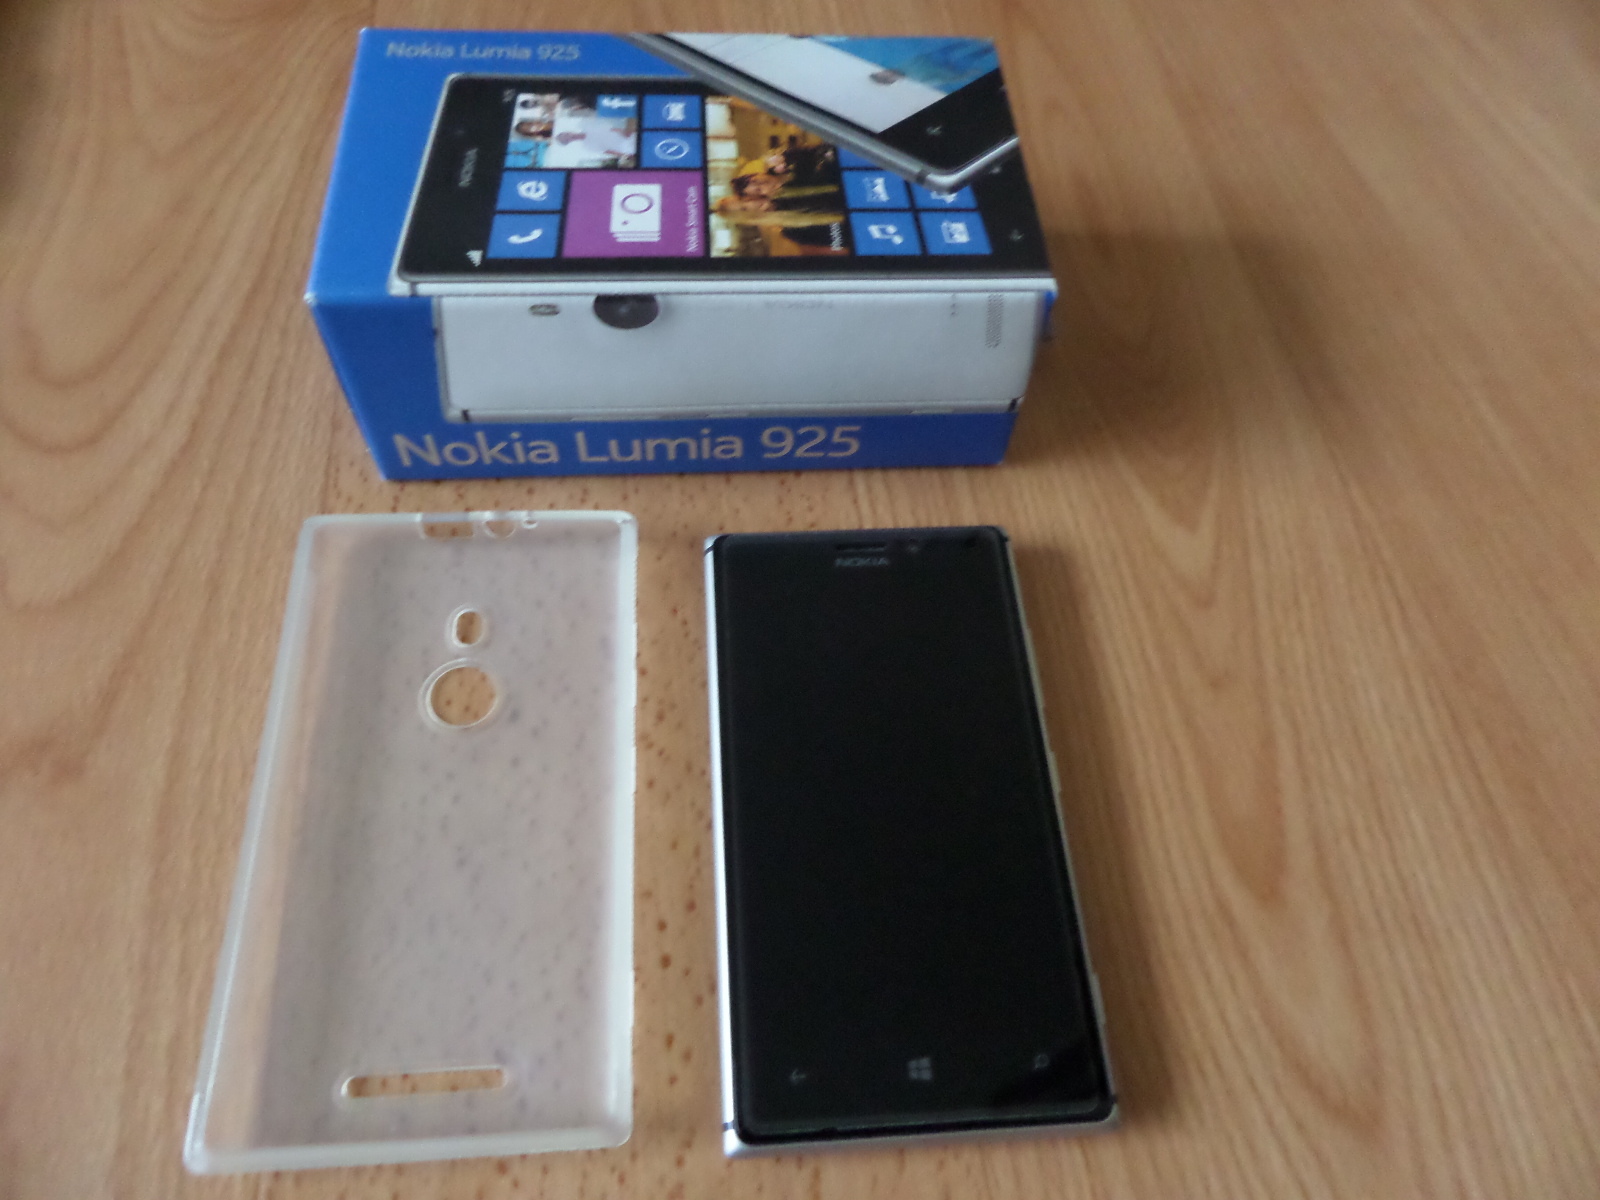  Sıfırdan farksız Lumia 925